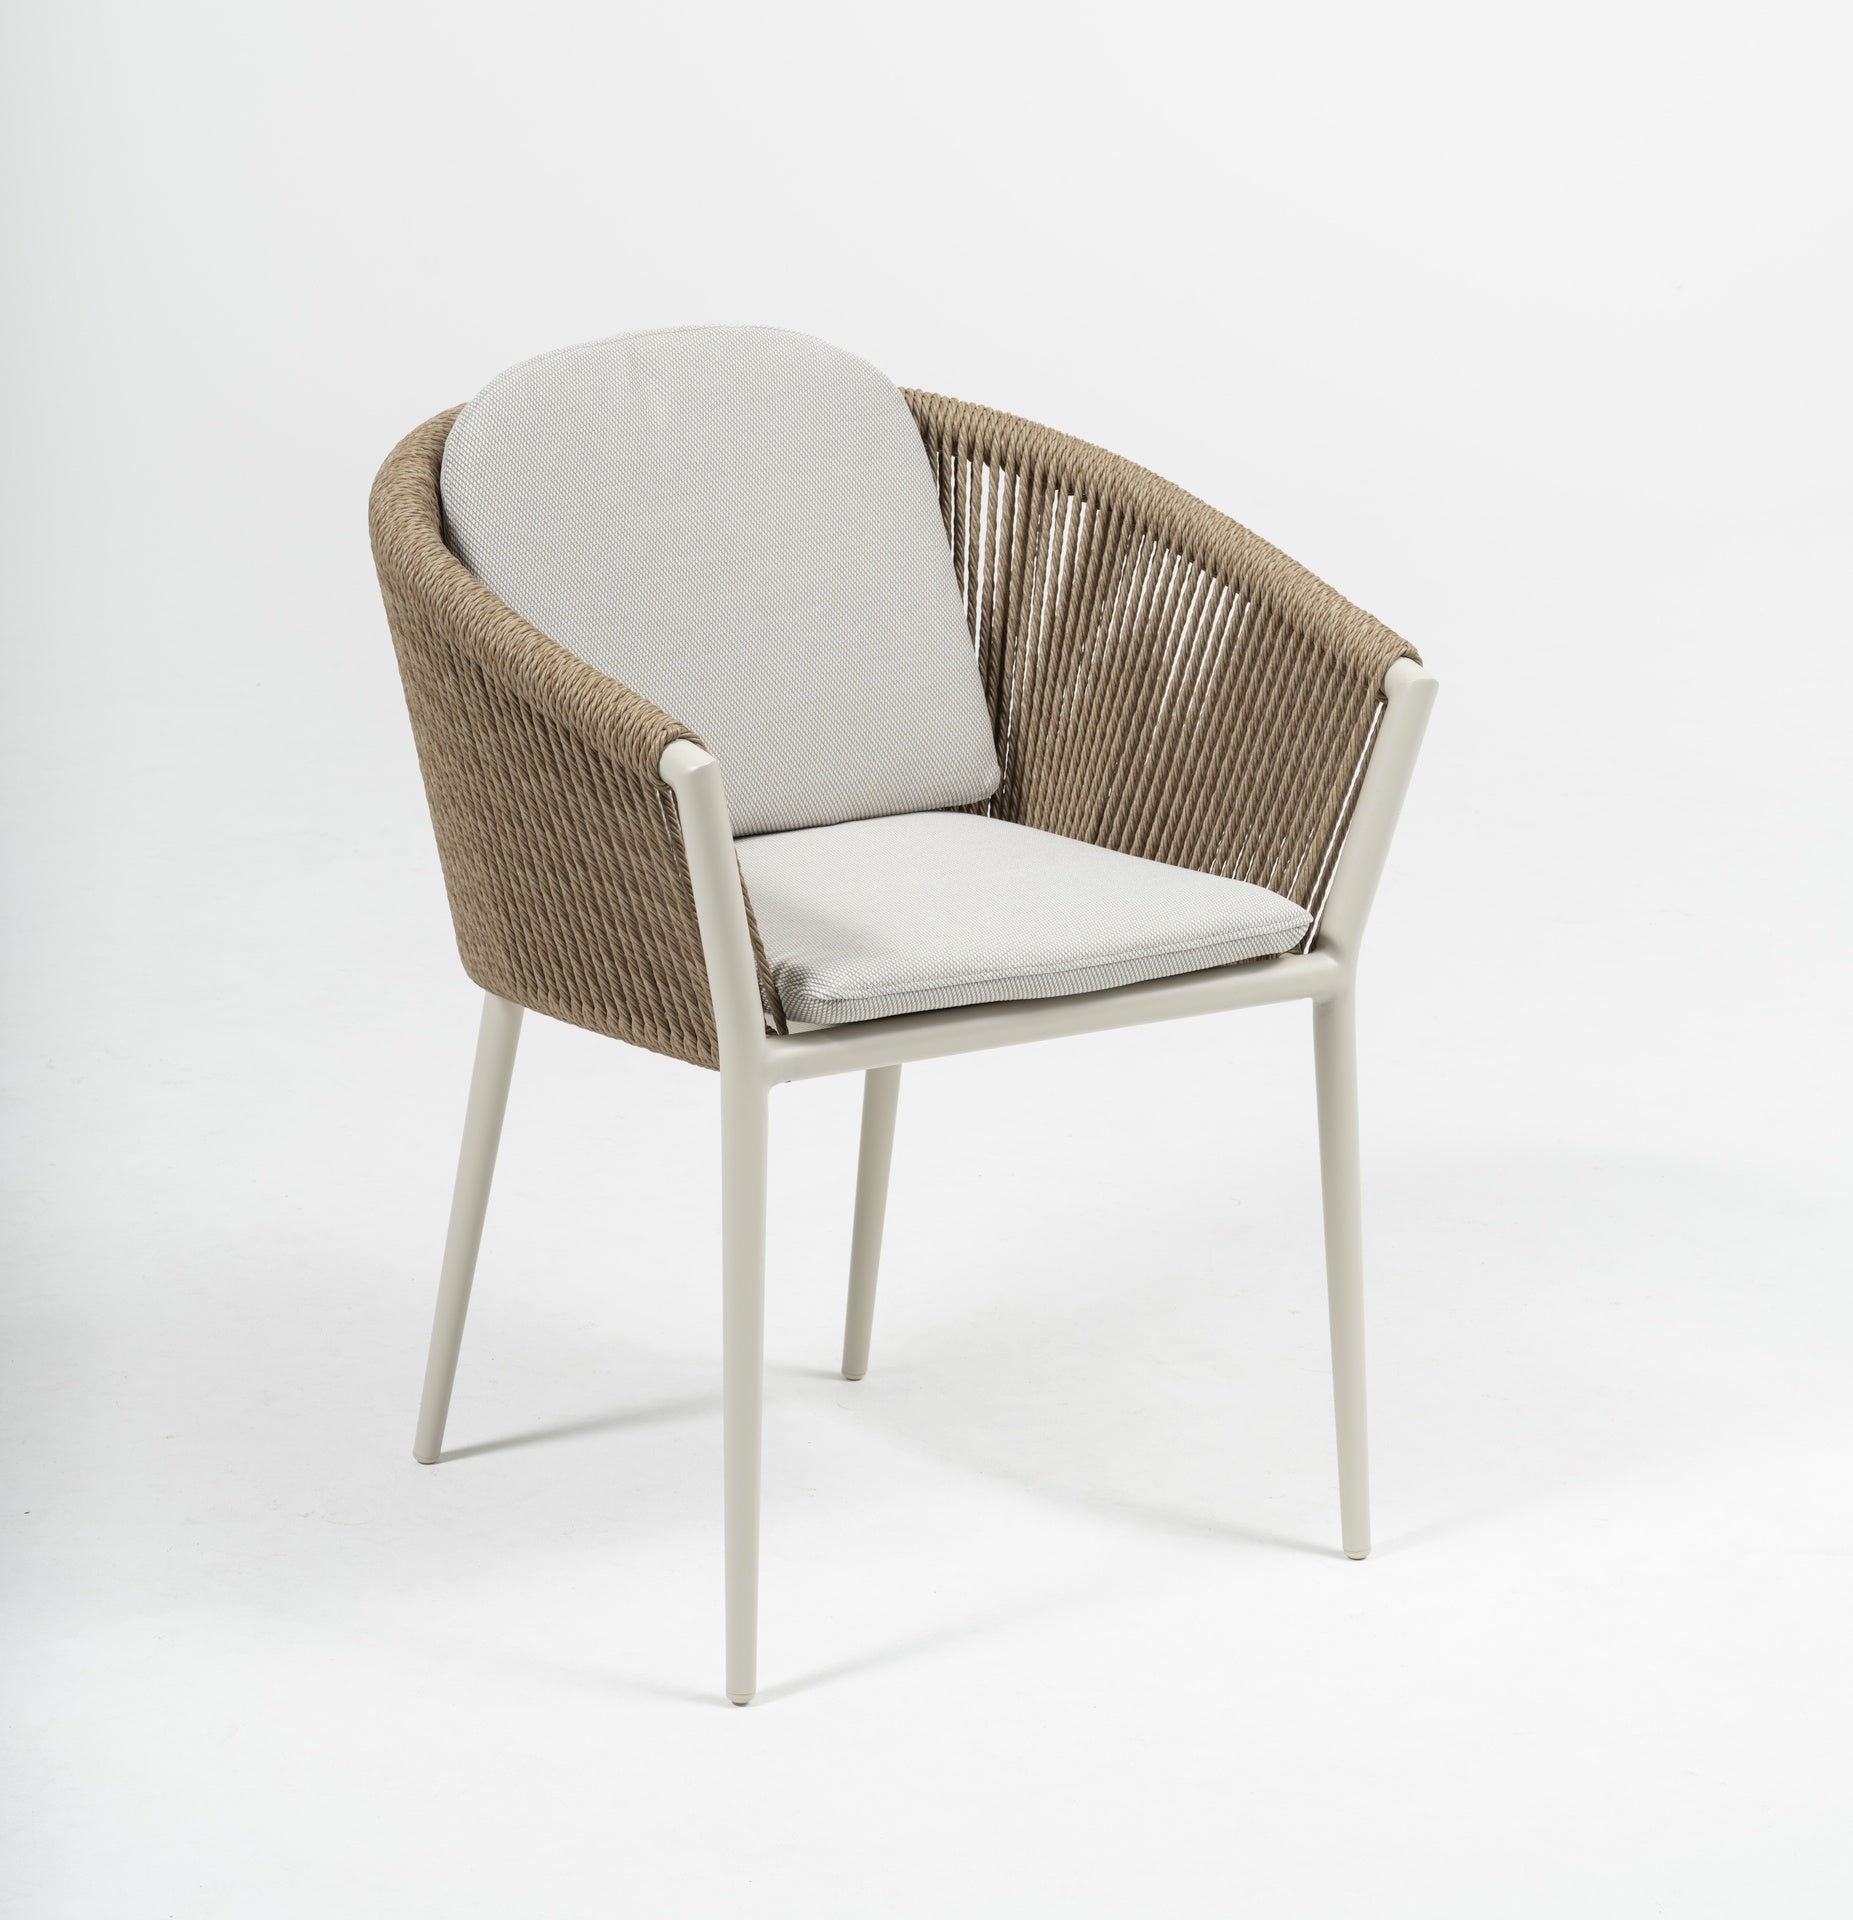 Eleganter 'Cassidy' Gartenstuhl mit weißem Metallgestell und natürlicher gedrehter Kunststoffschnur, ergänzt durch ein bequemes Sitz- und Rückenkissen, verfügbar bei Gartenmoebelshop.at - Ansicht mit grauem Hintergrund